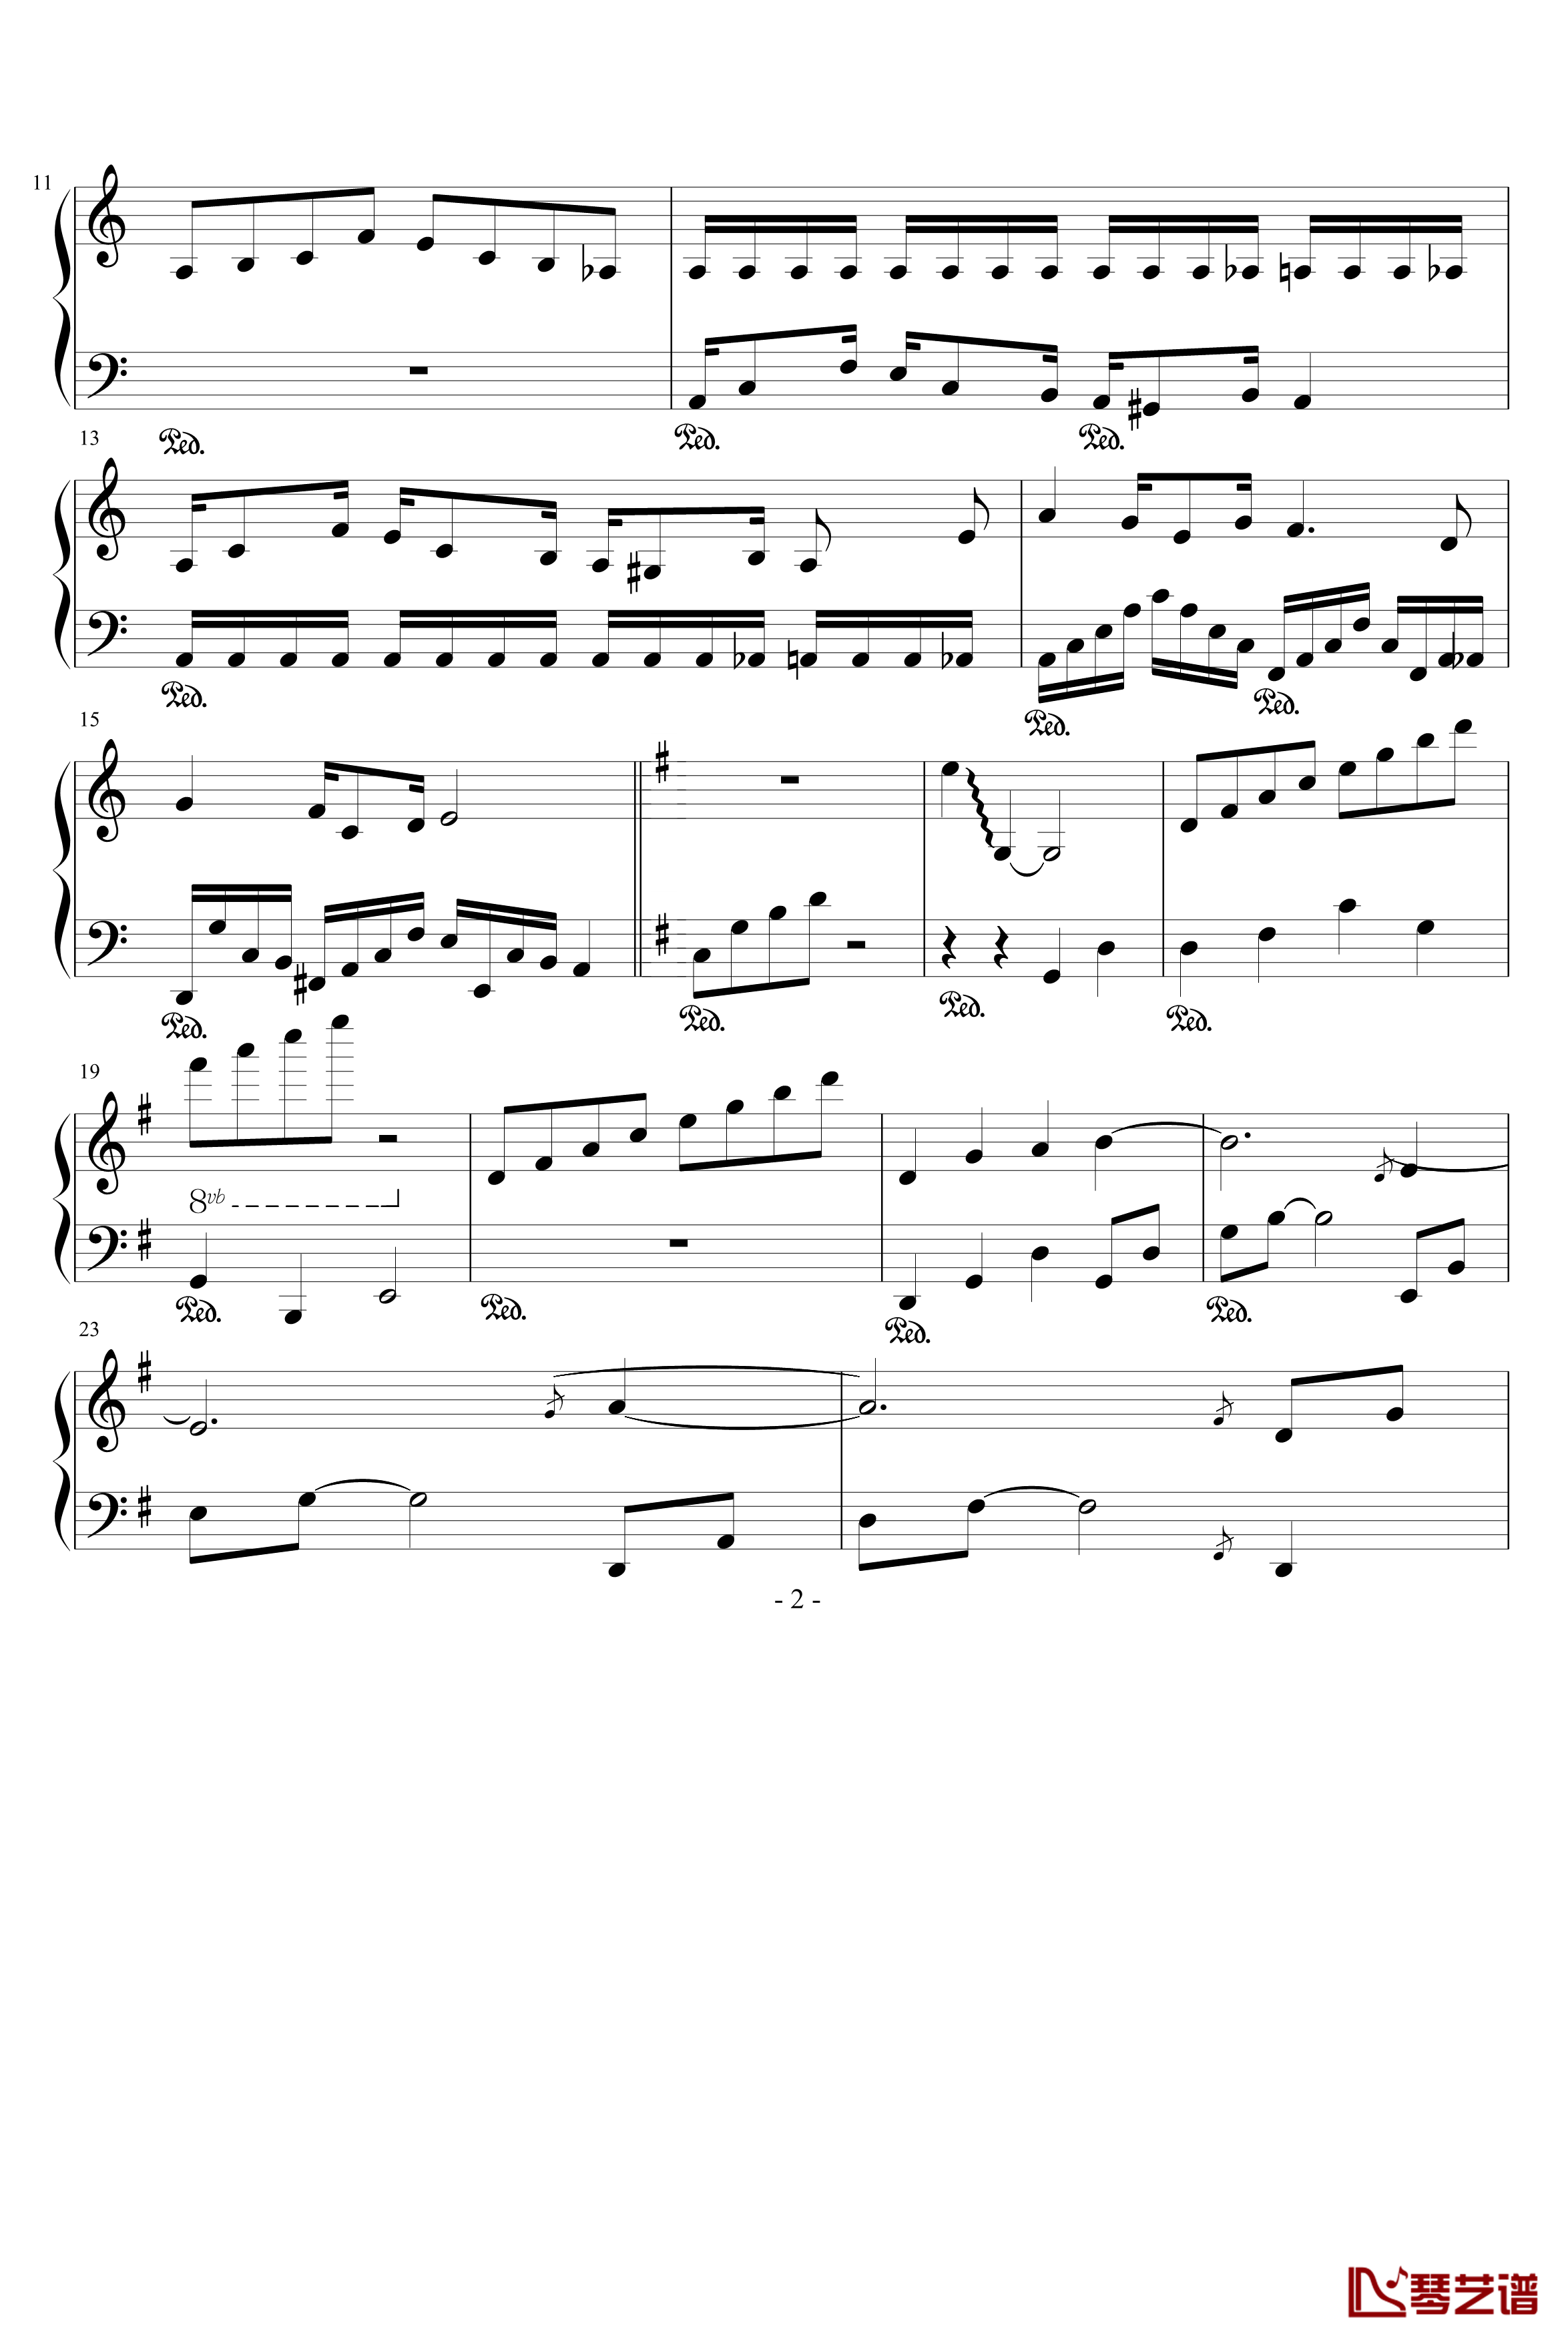 CG的旋律钢琴谱-97525xc2